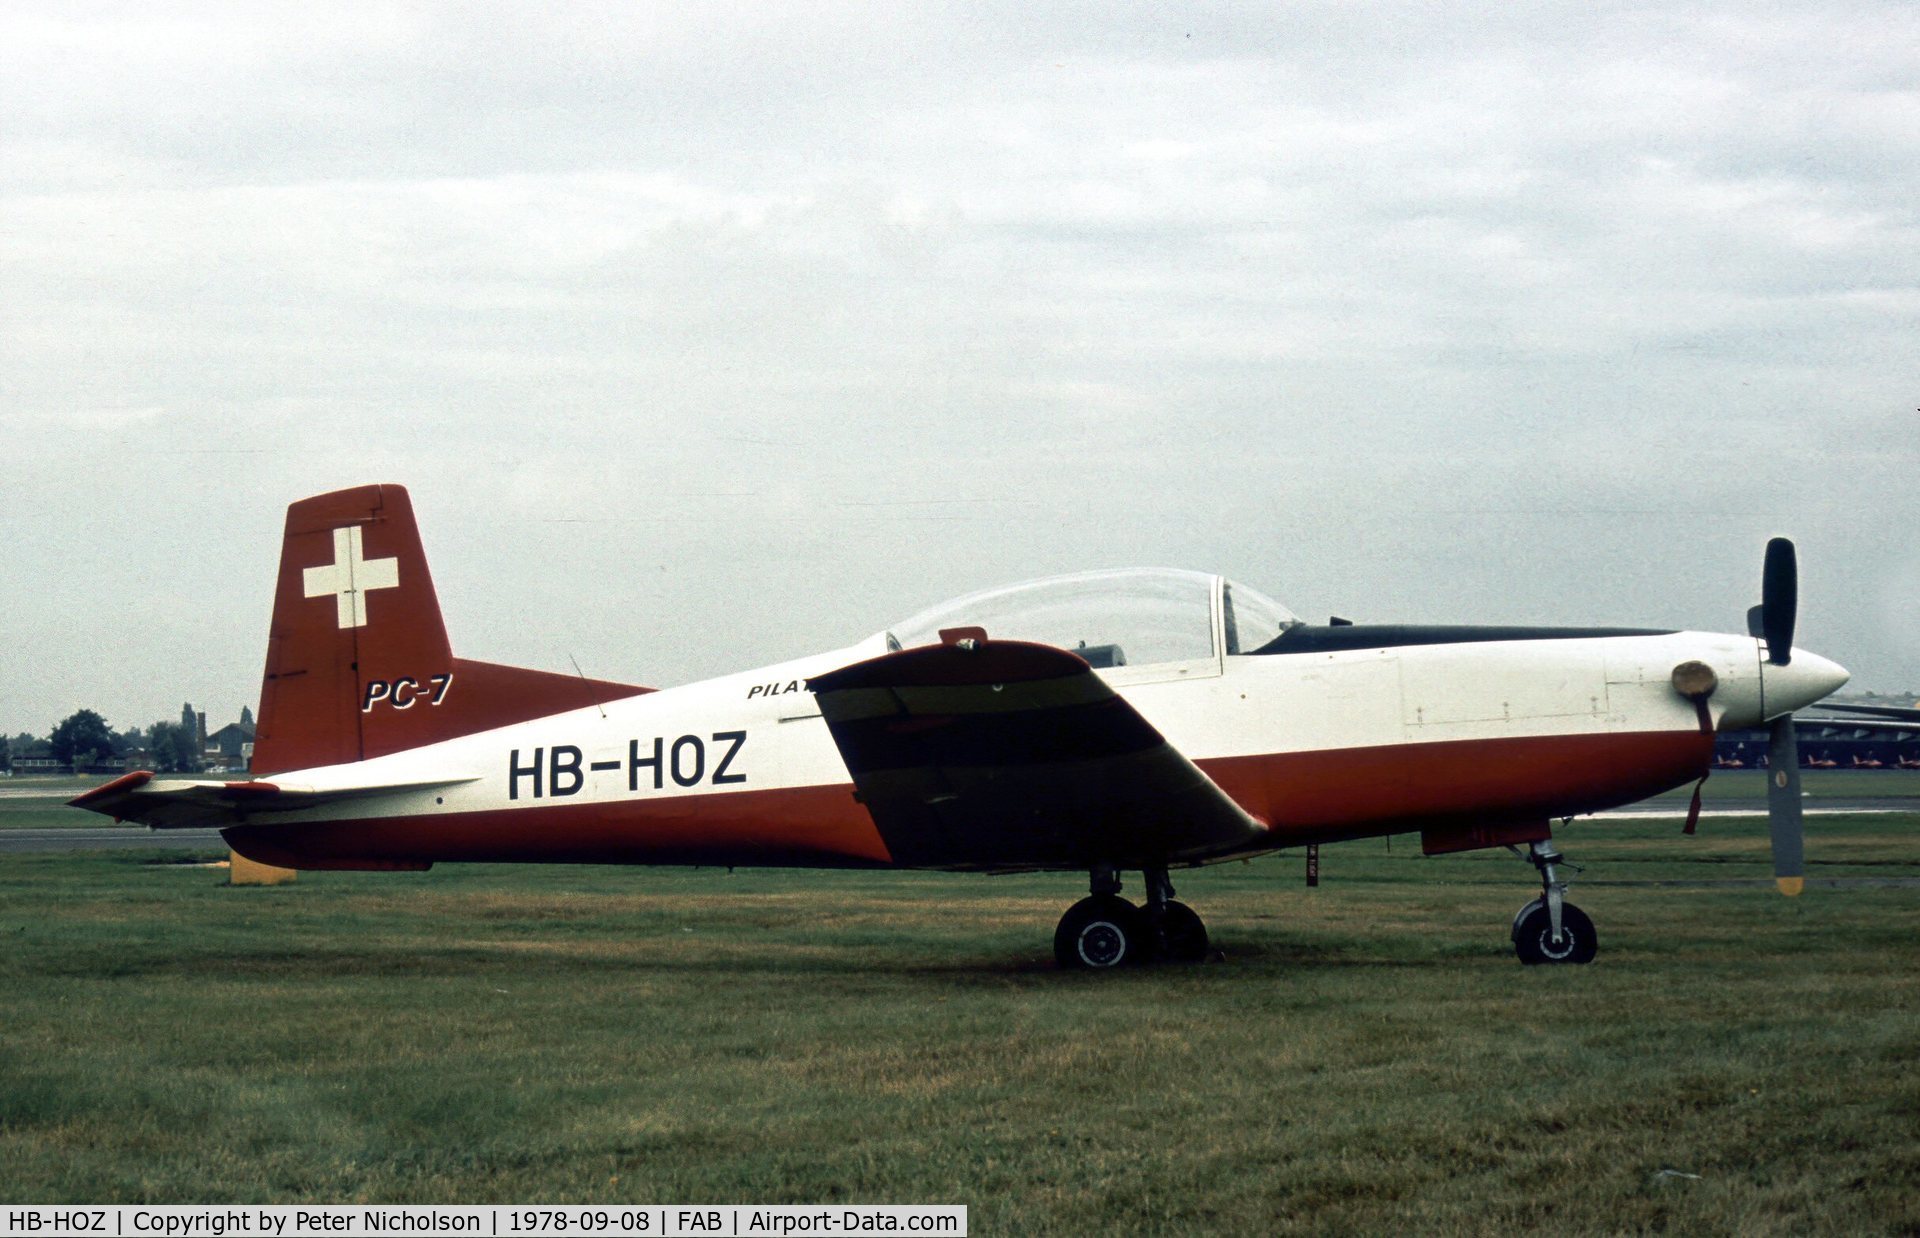 HB-HOZ, 1959 Pilatus PC-7 Turbo Trainer C/N 509, Second prototype Pilatus PC-7 Turbo Trainer on display at the 1978 Farnborough Airshow.